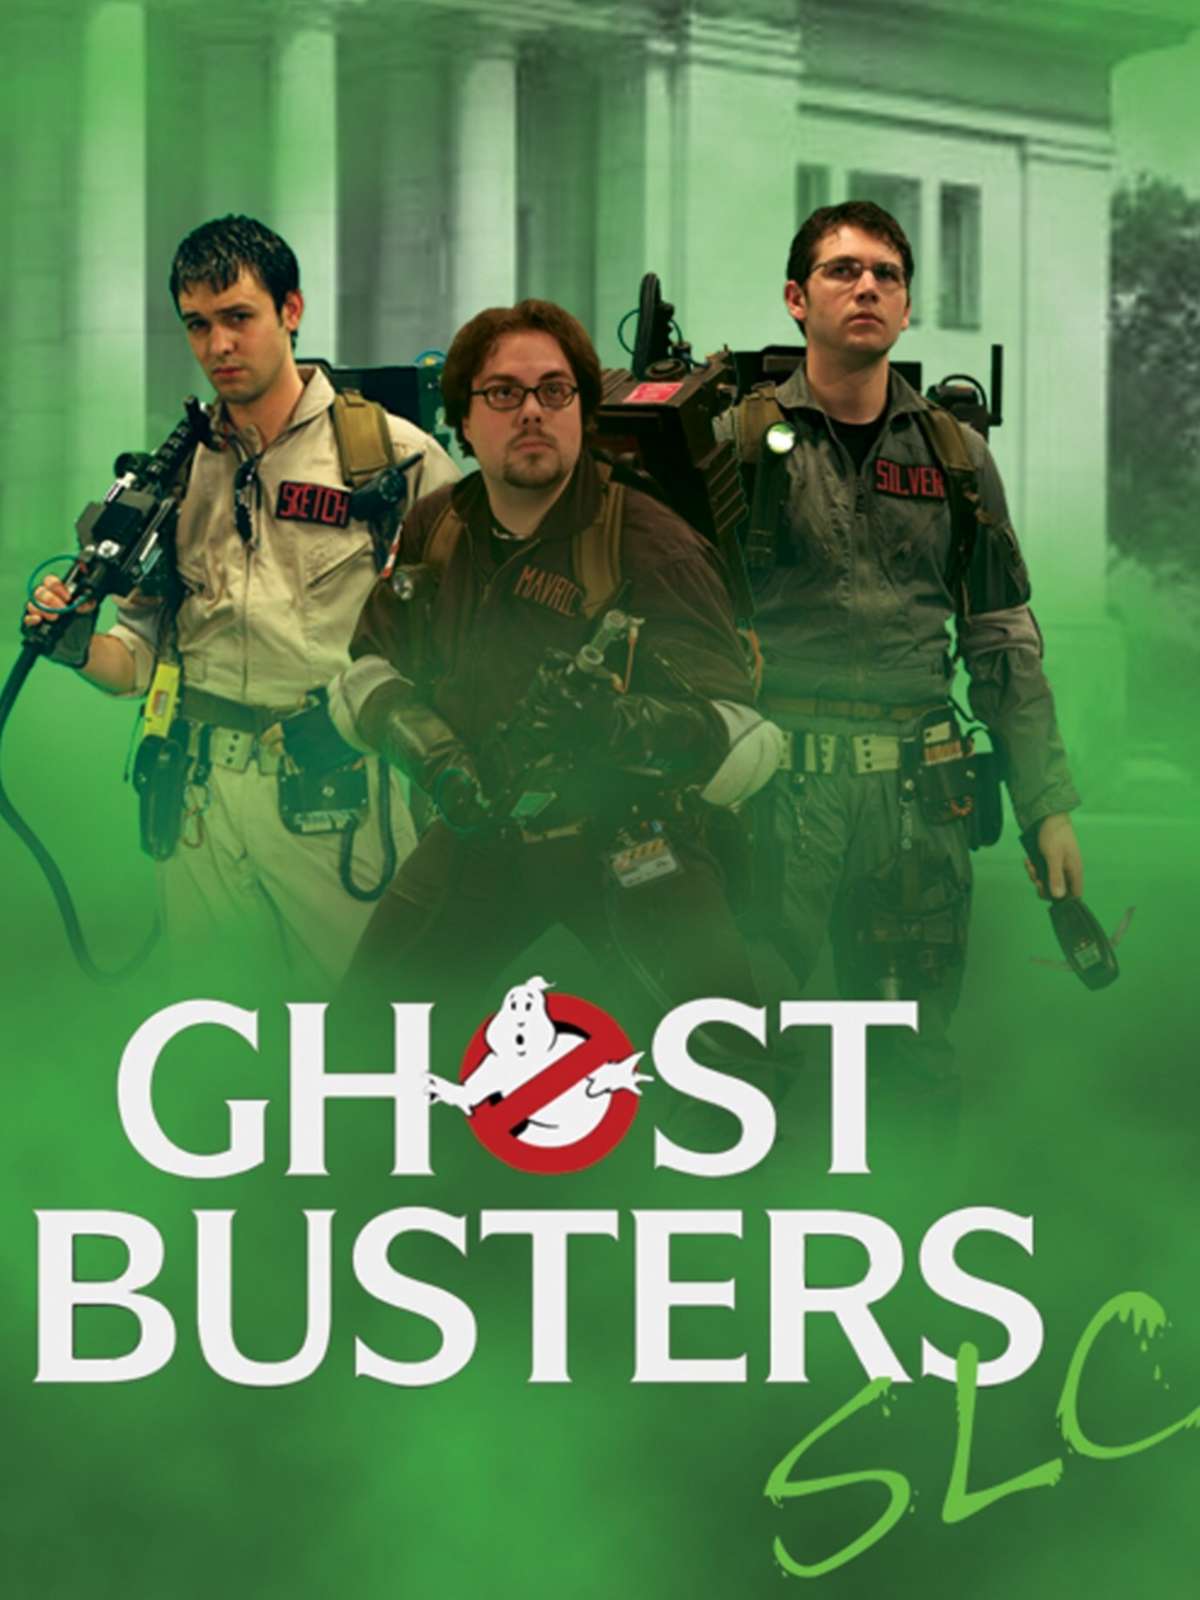 Ghostbusters Slc Ghostbusters Fanon Wiki Fandom